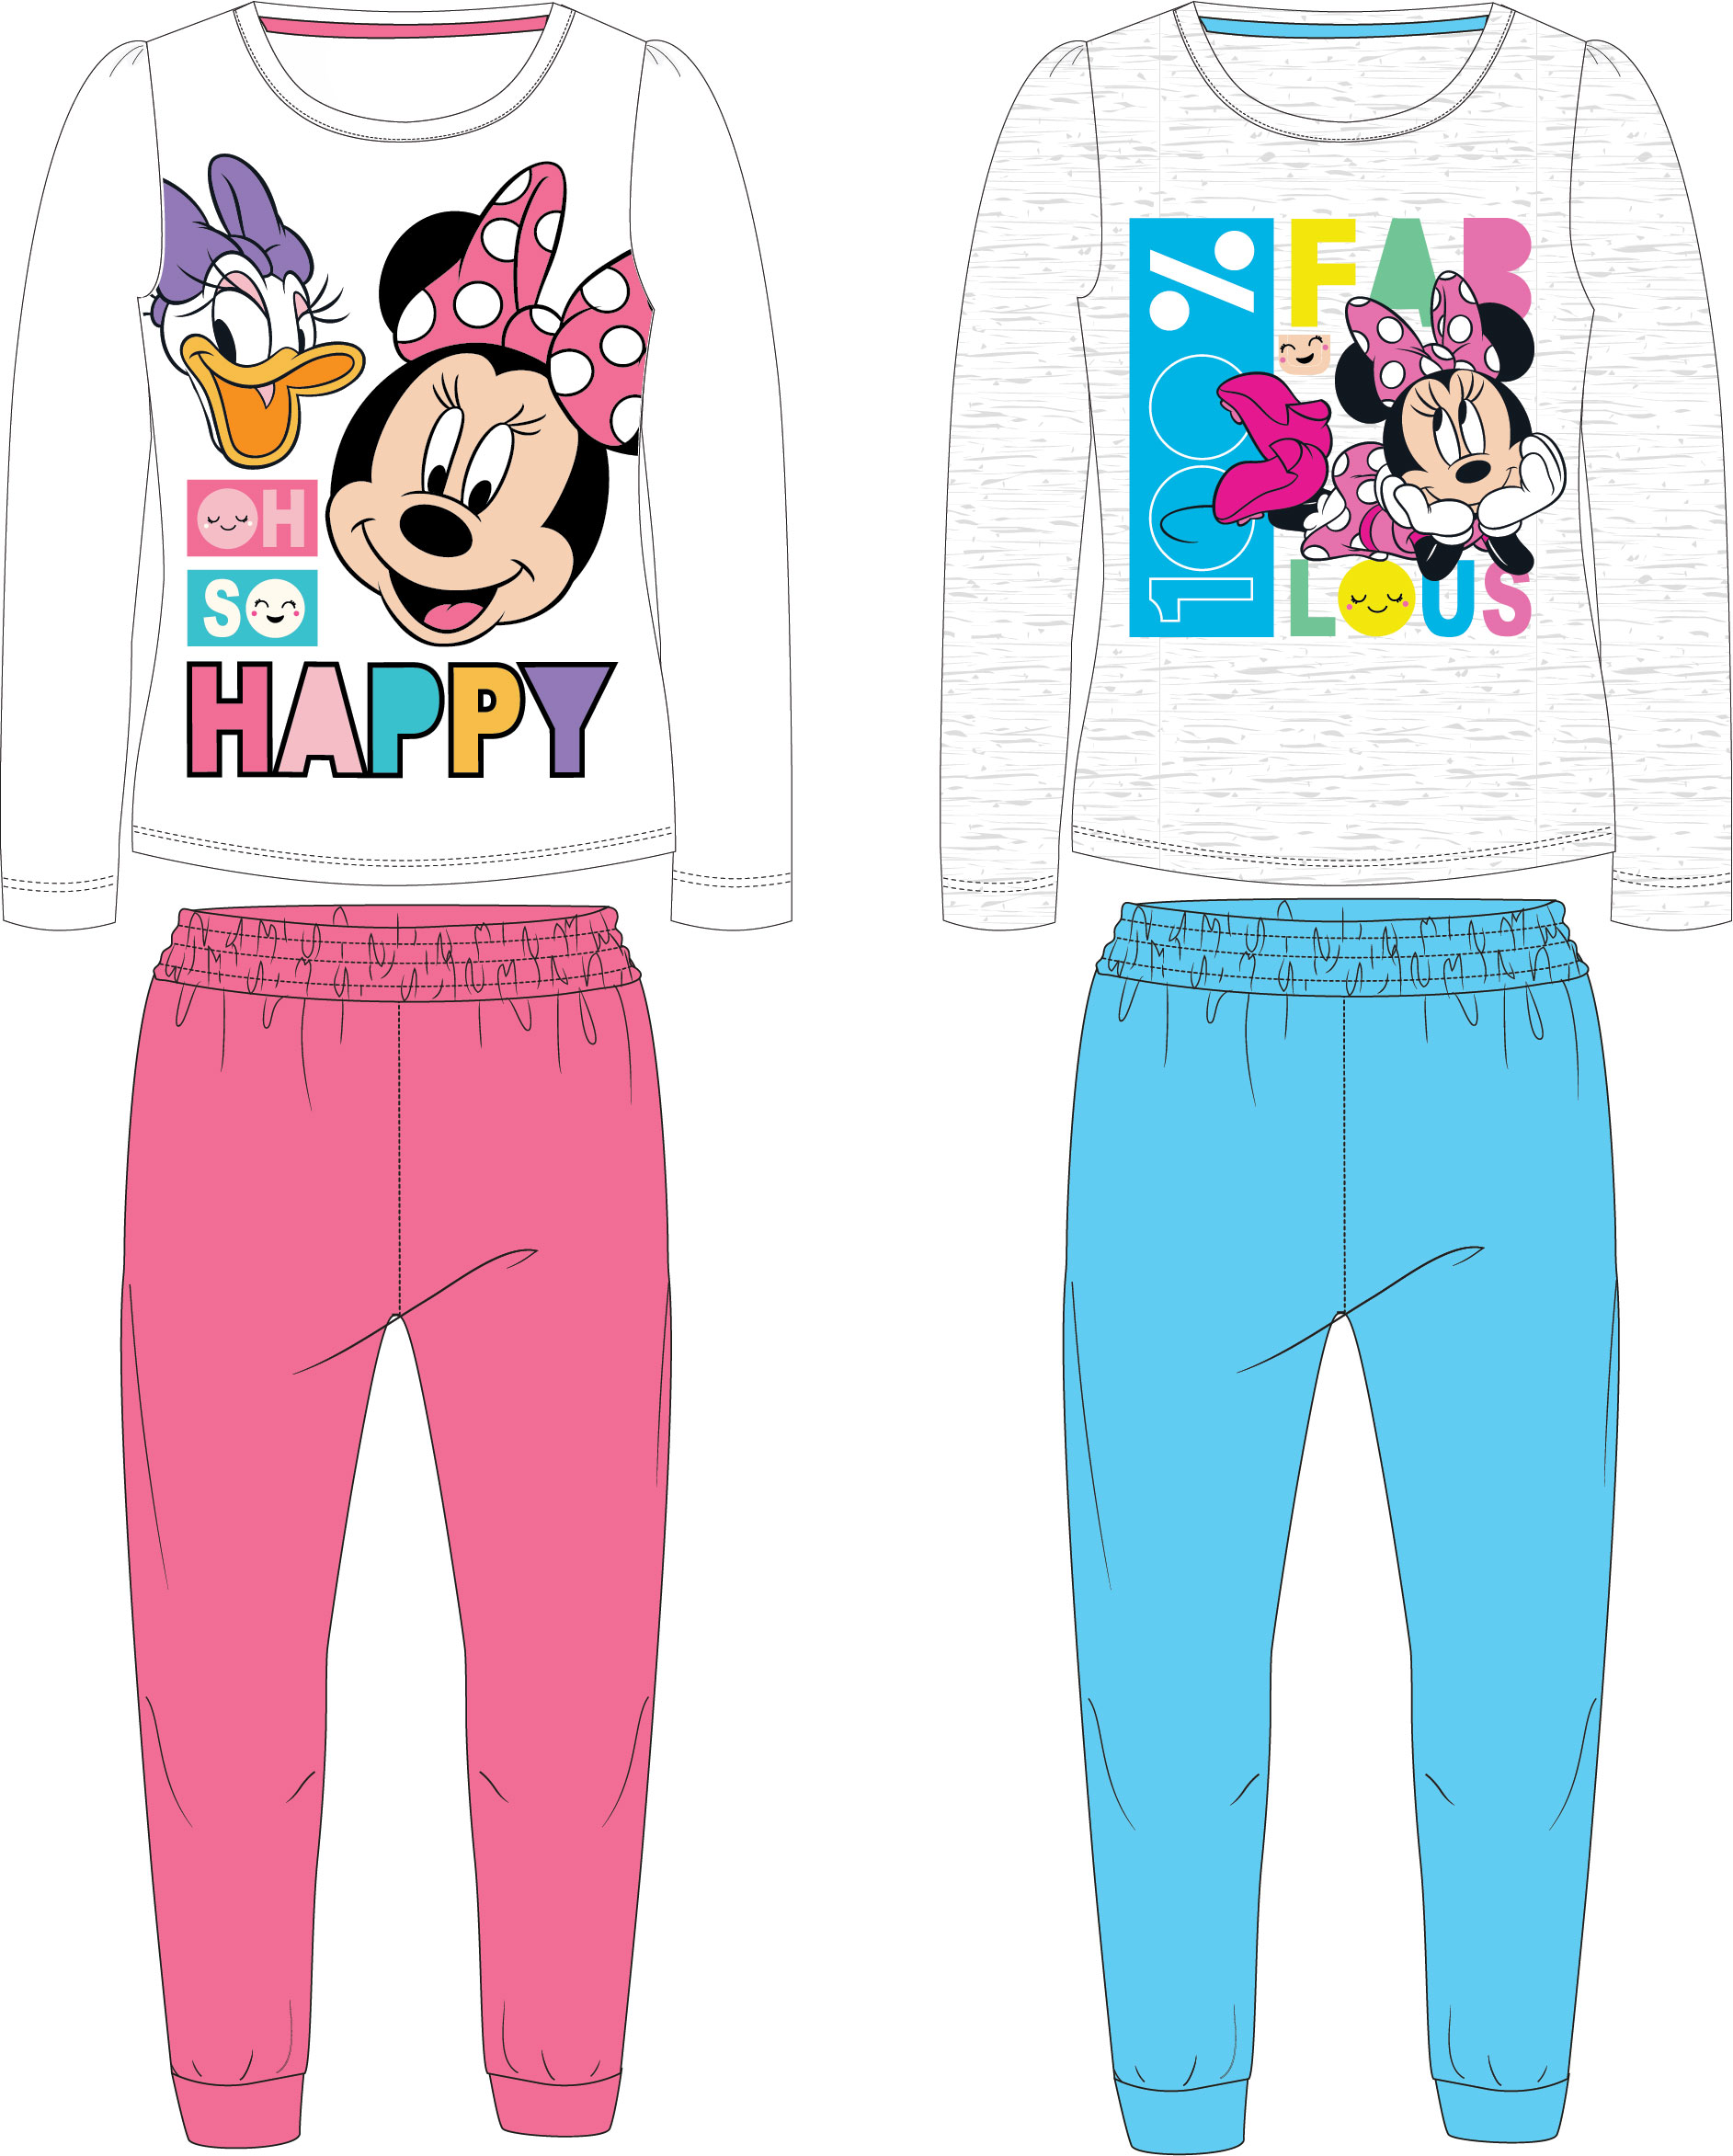 Minnie Mouse - licence Dívčí pyžamo - Minnie Mouse 52049146, šedá / světle modré kalhoty Barva: Šedá, Velikost: 104